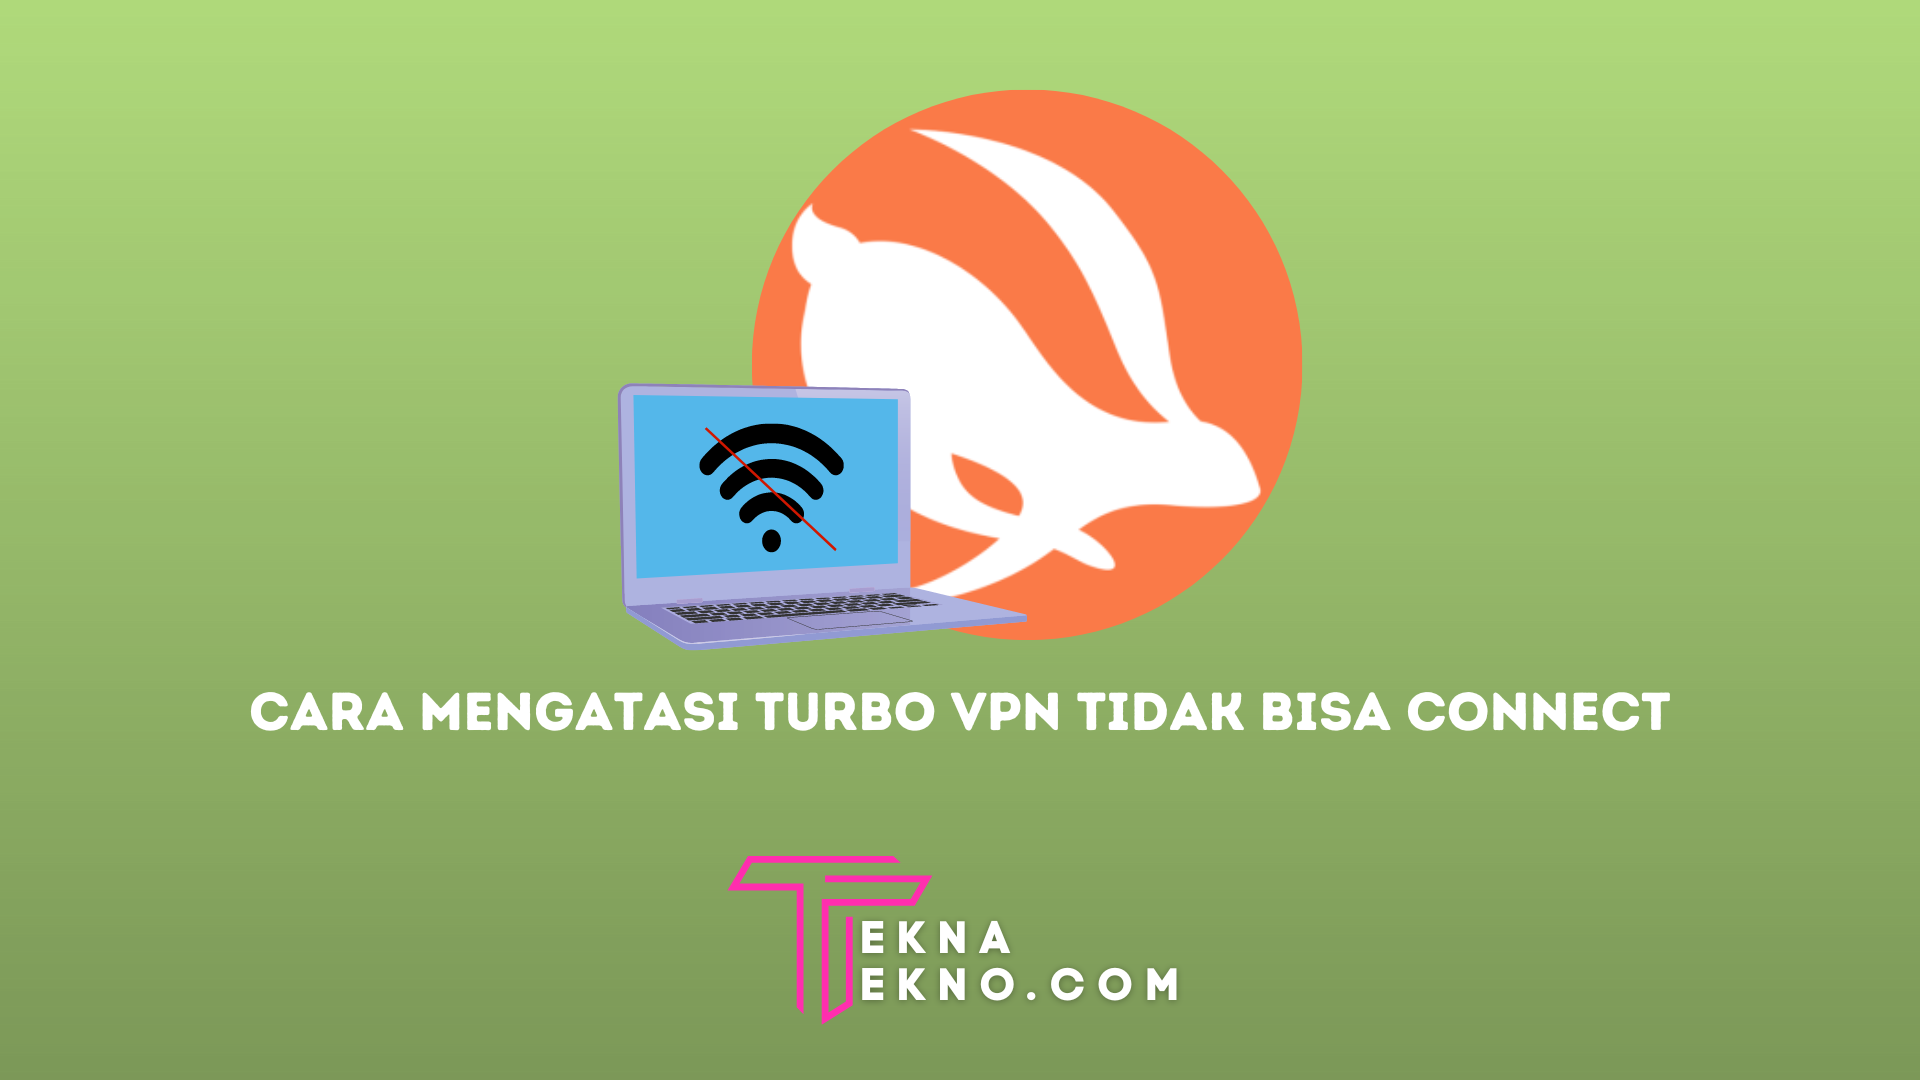 Penyebab dan Cara Mengatasi Turbo VPN Tidak Bisa Connect di Laptop Windows 10